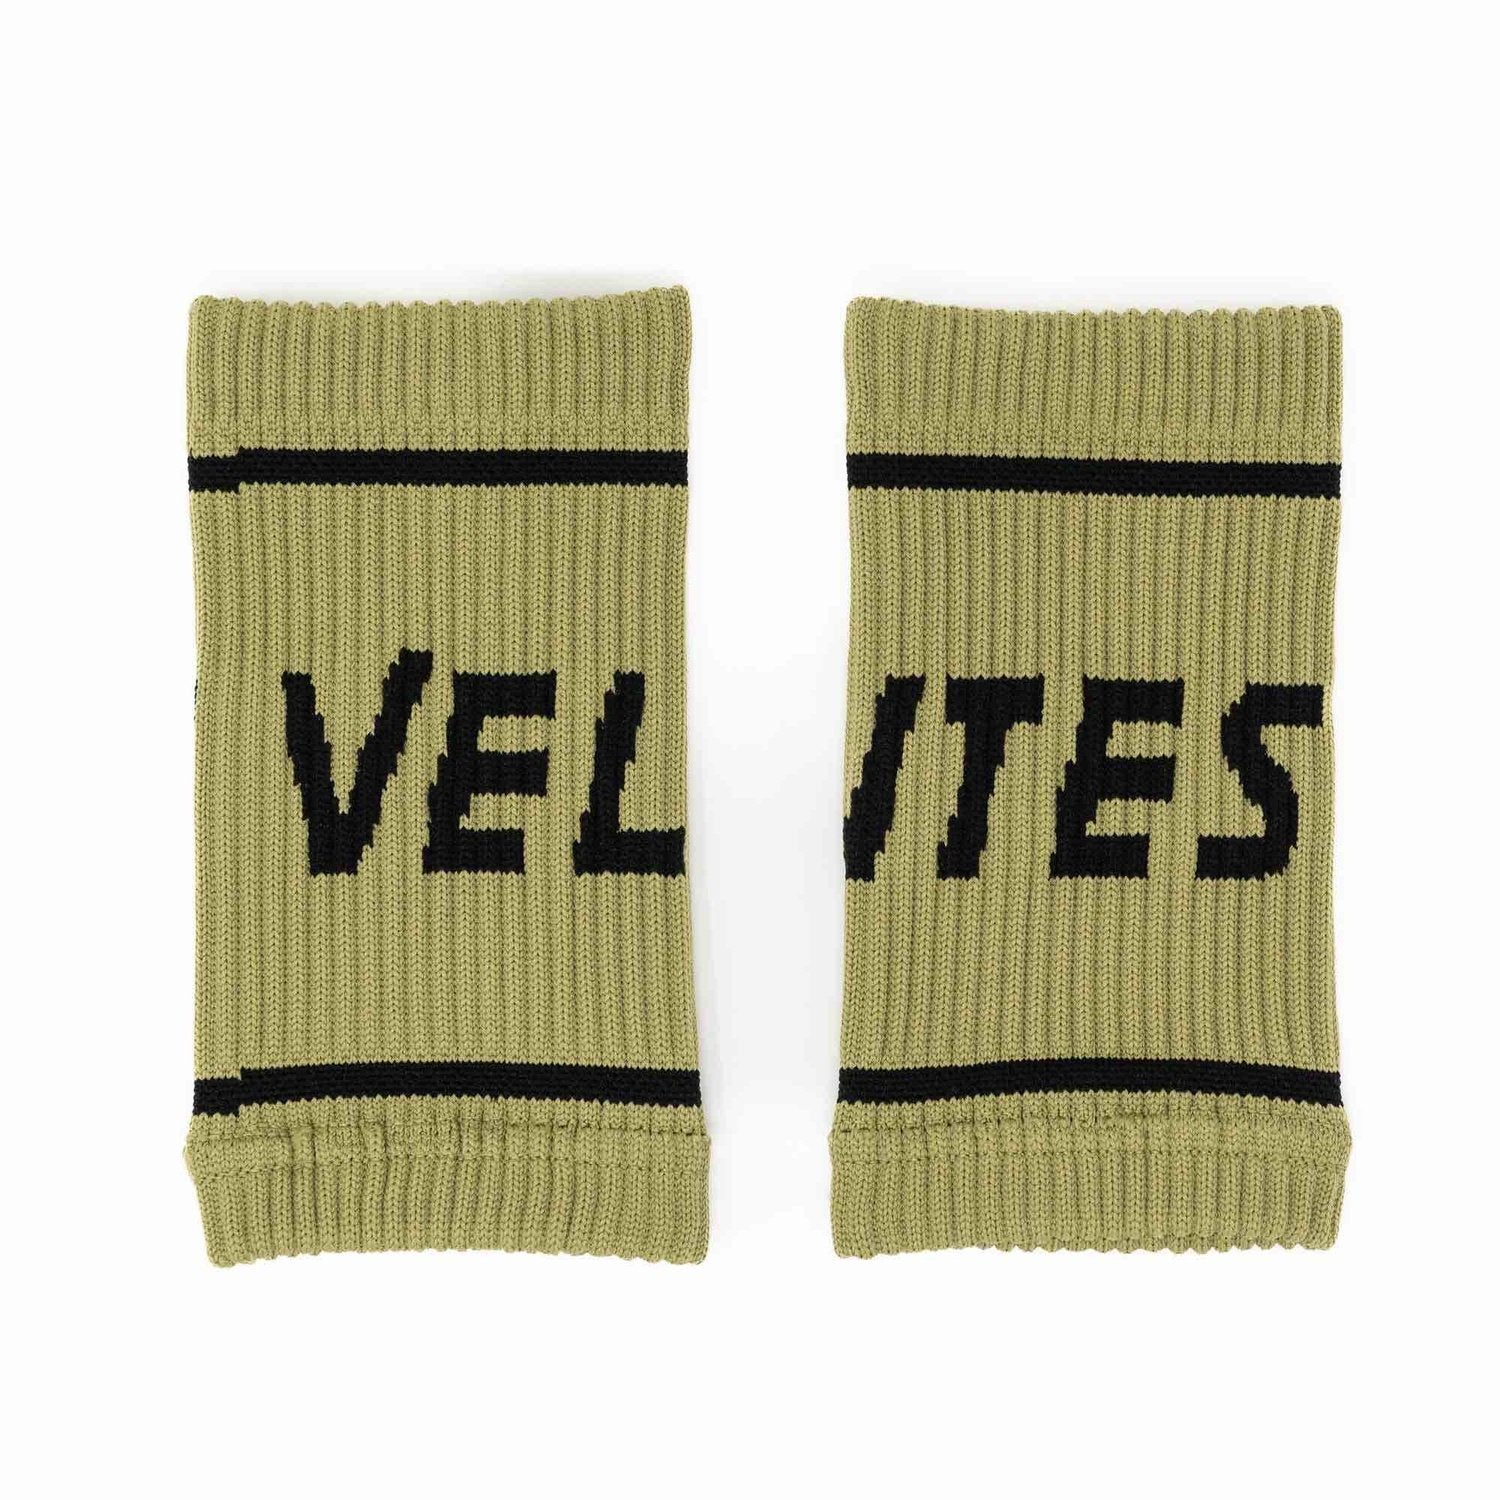 Velites Wrist Bands (Schweissbänder) Olive kaufen bei HighPowered.ch